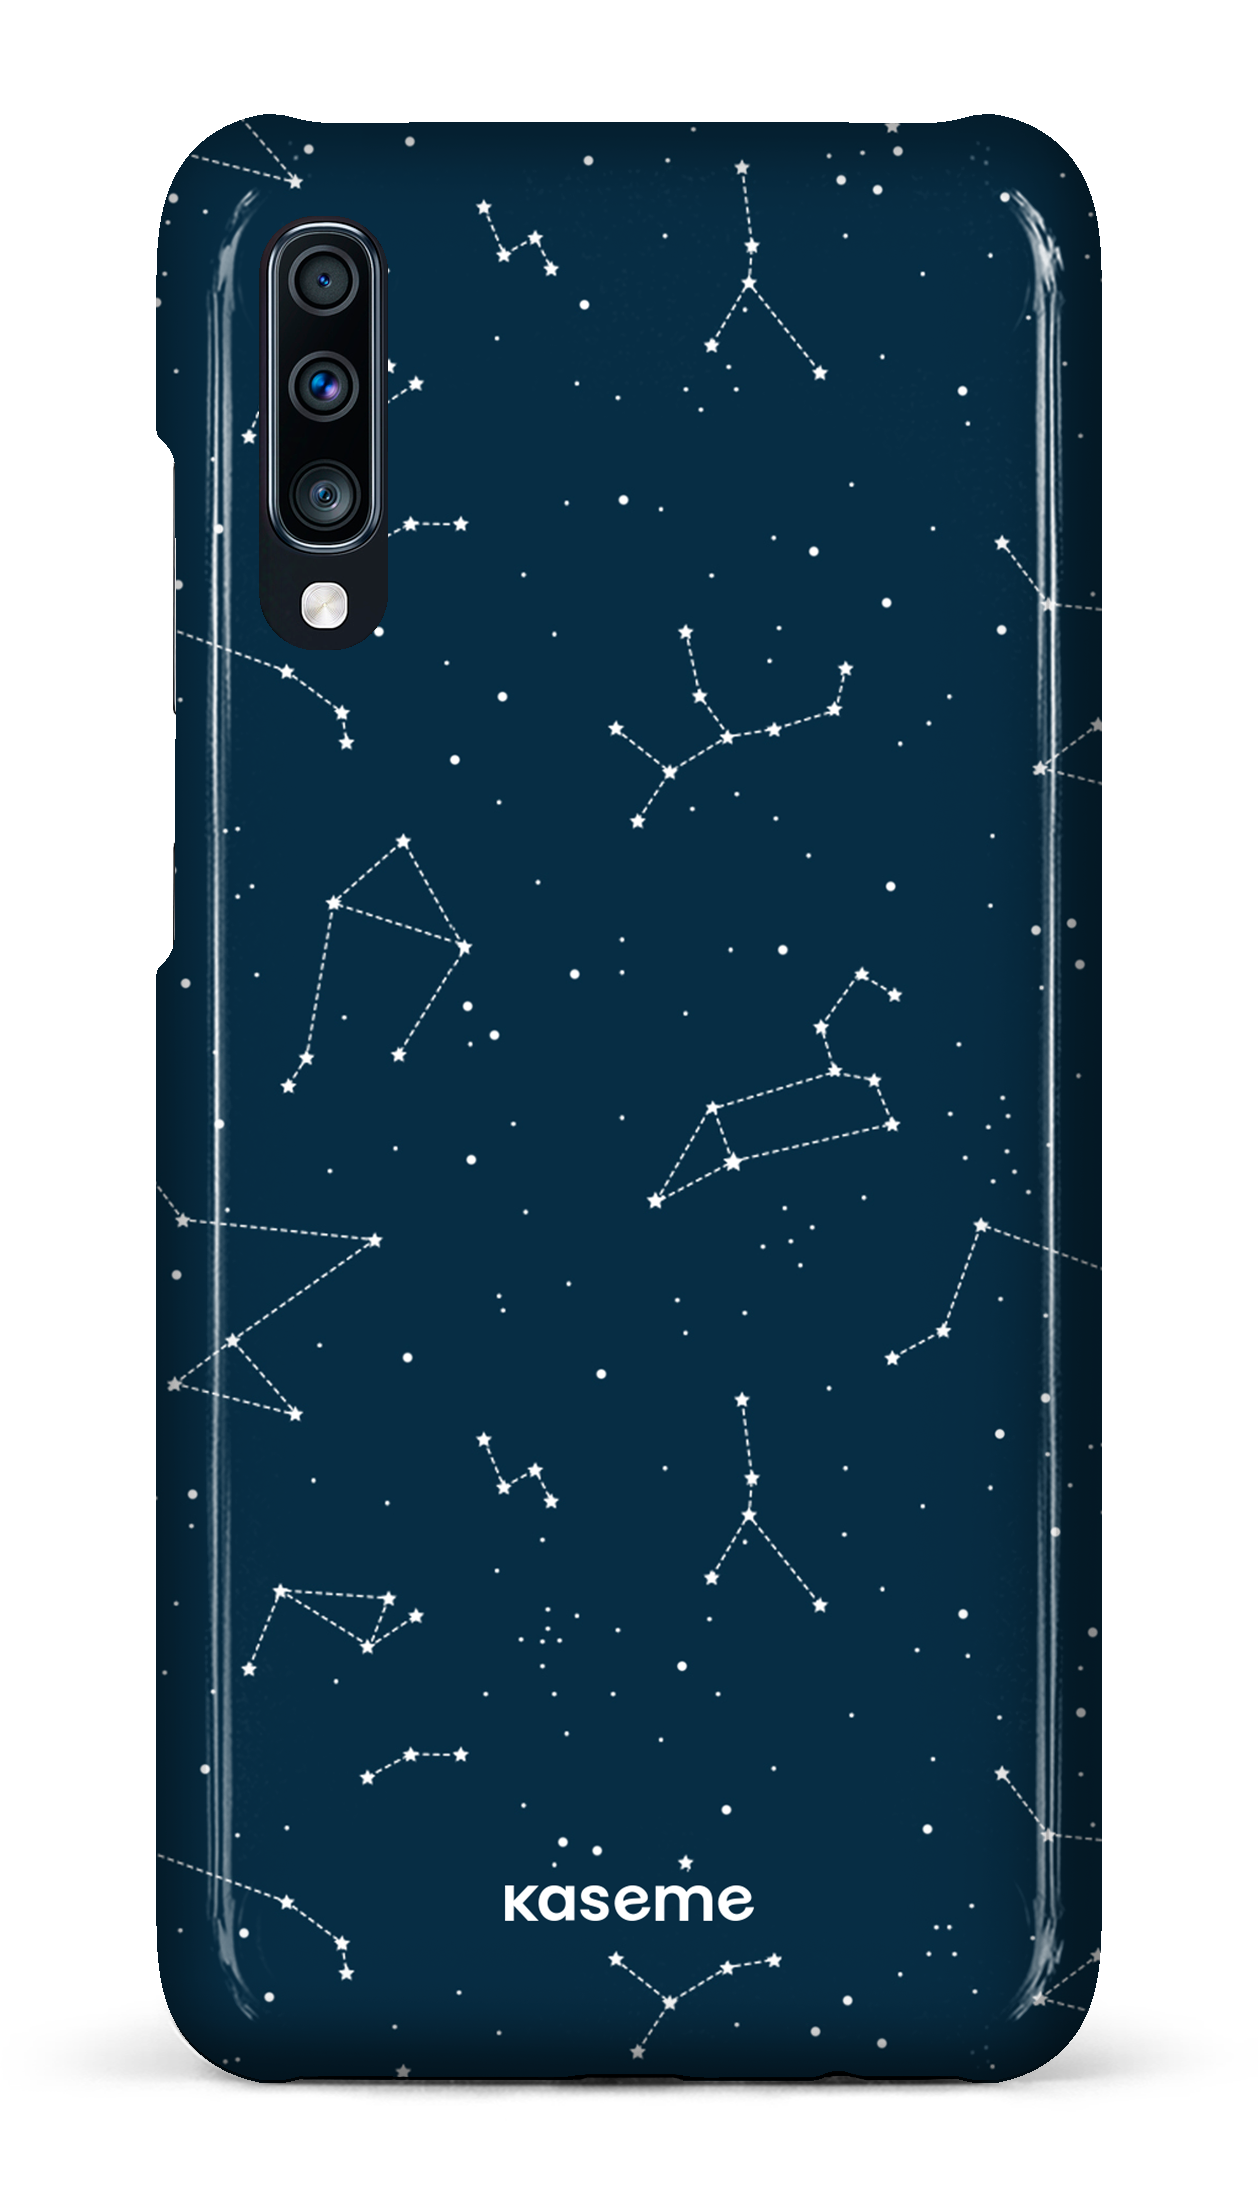 Cosmos - Galaxy A70